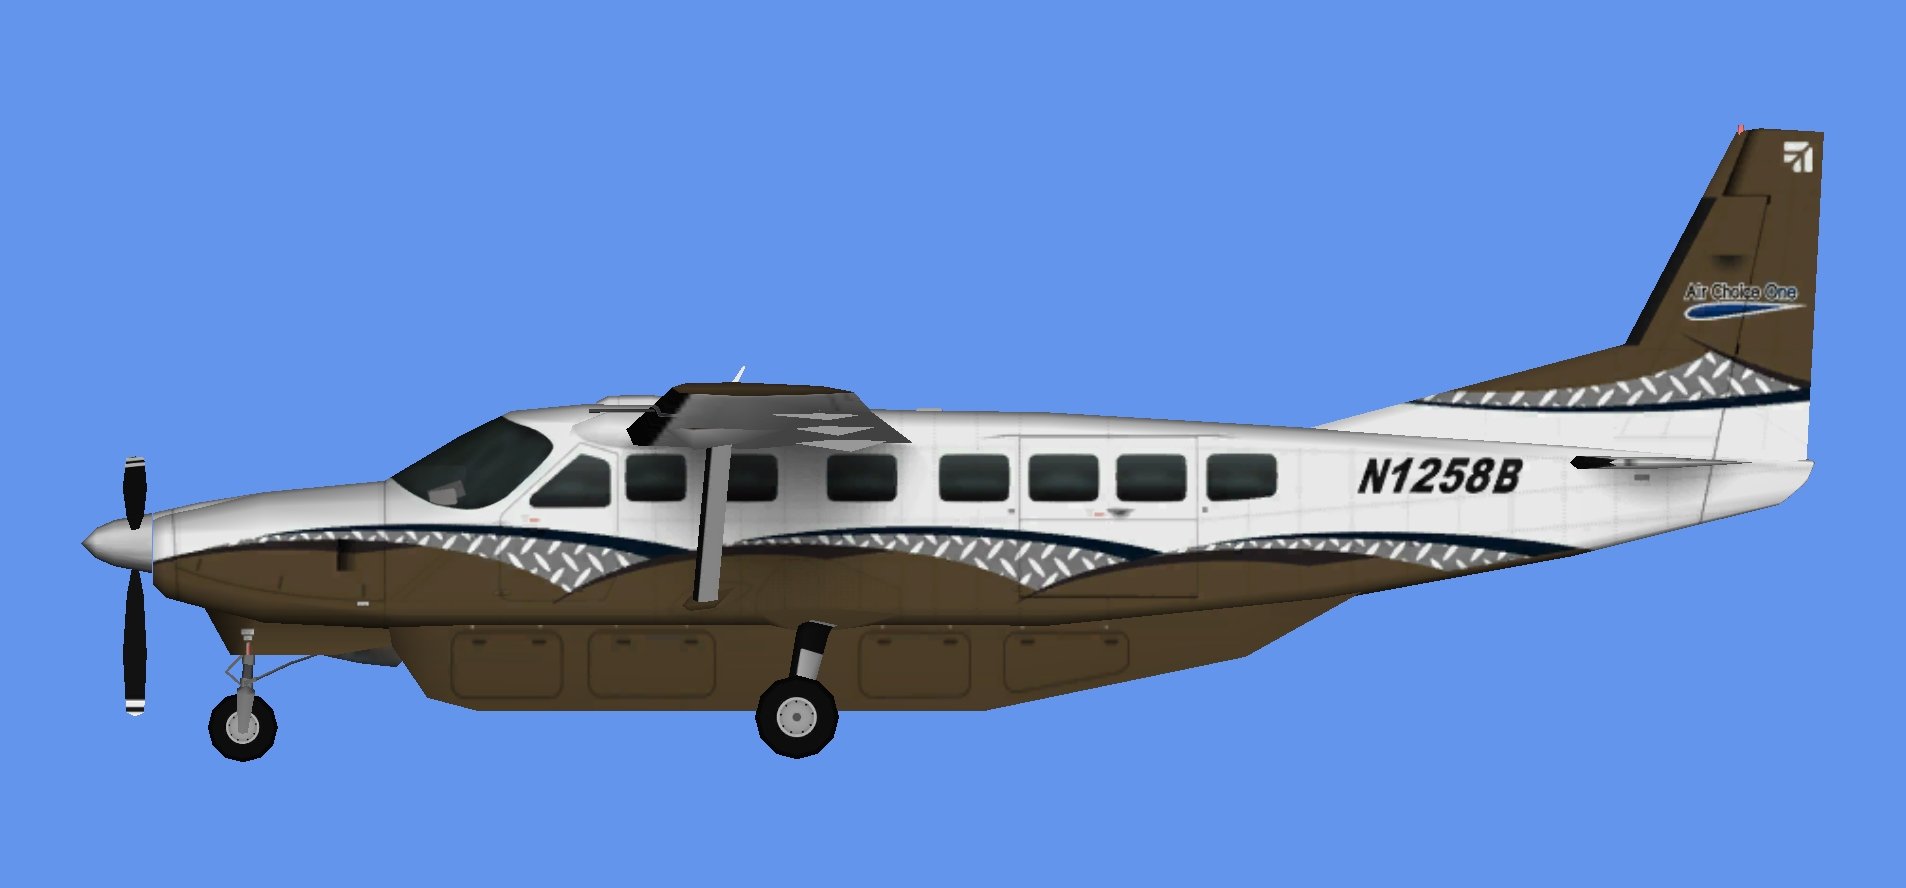 Air Choice One Cessna 208B